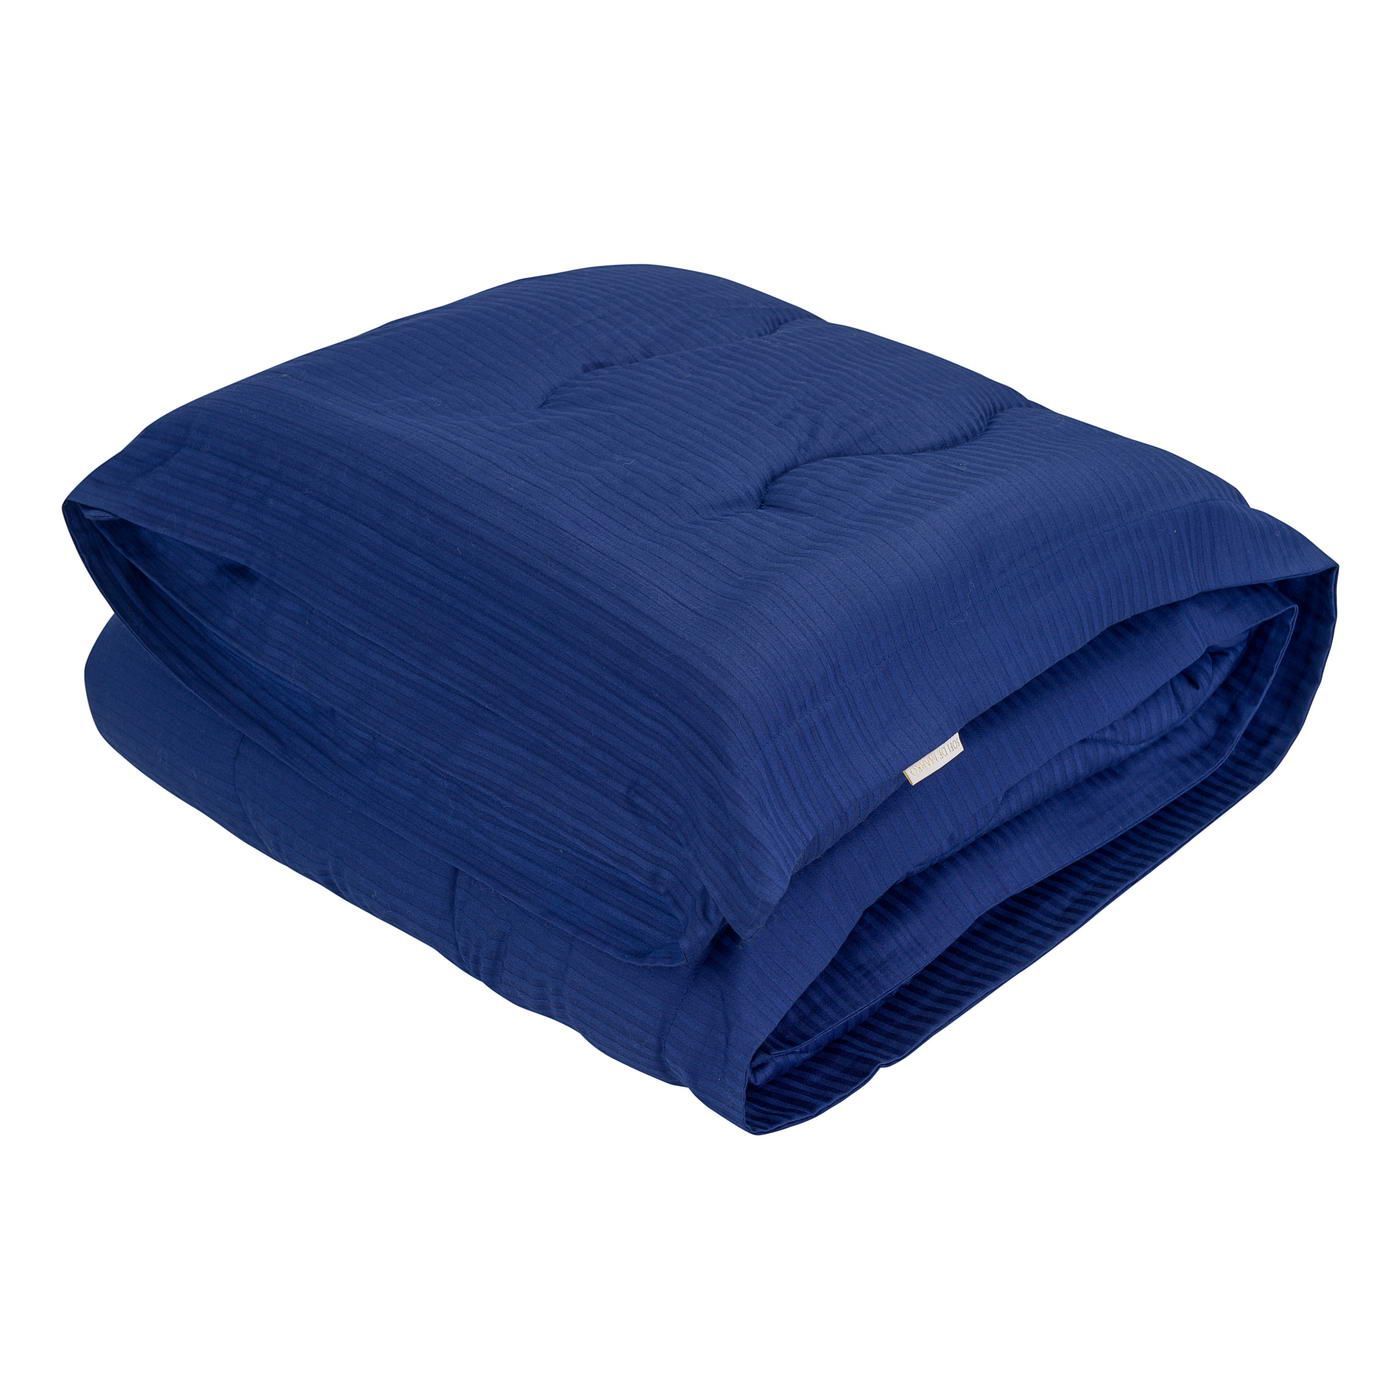 Одеяло-покрывало Тиффани цвет: сапфировый (195х220 см), размер 195х220 см sofi973247 Одеяло-покрывало Тиффани цвет: сапфировый (195х220 см) - фото 1